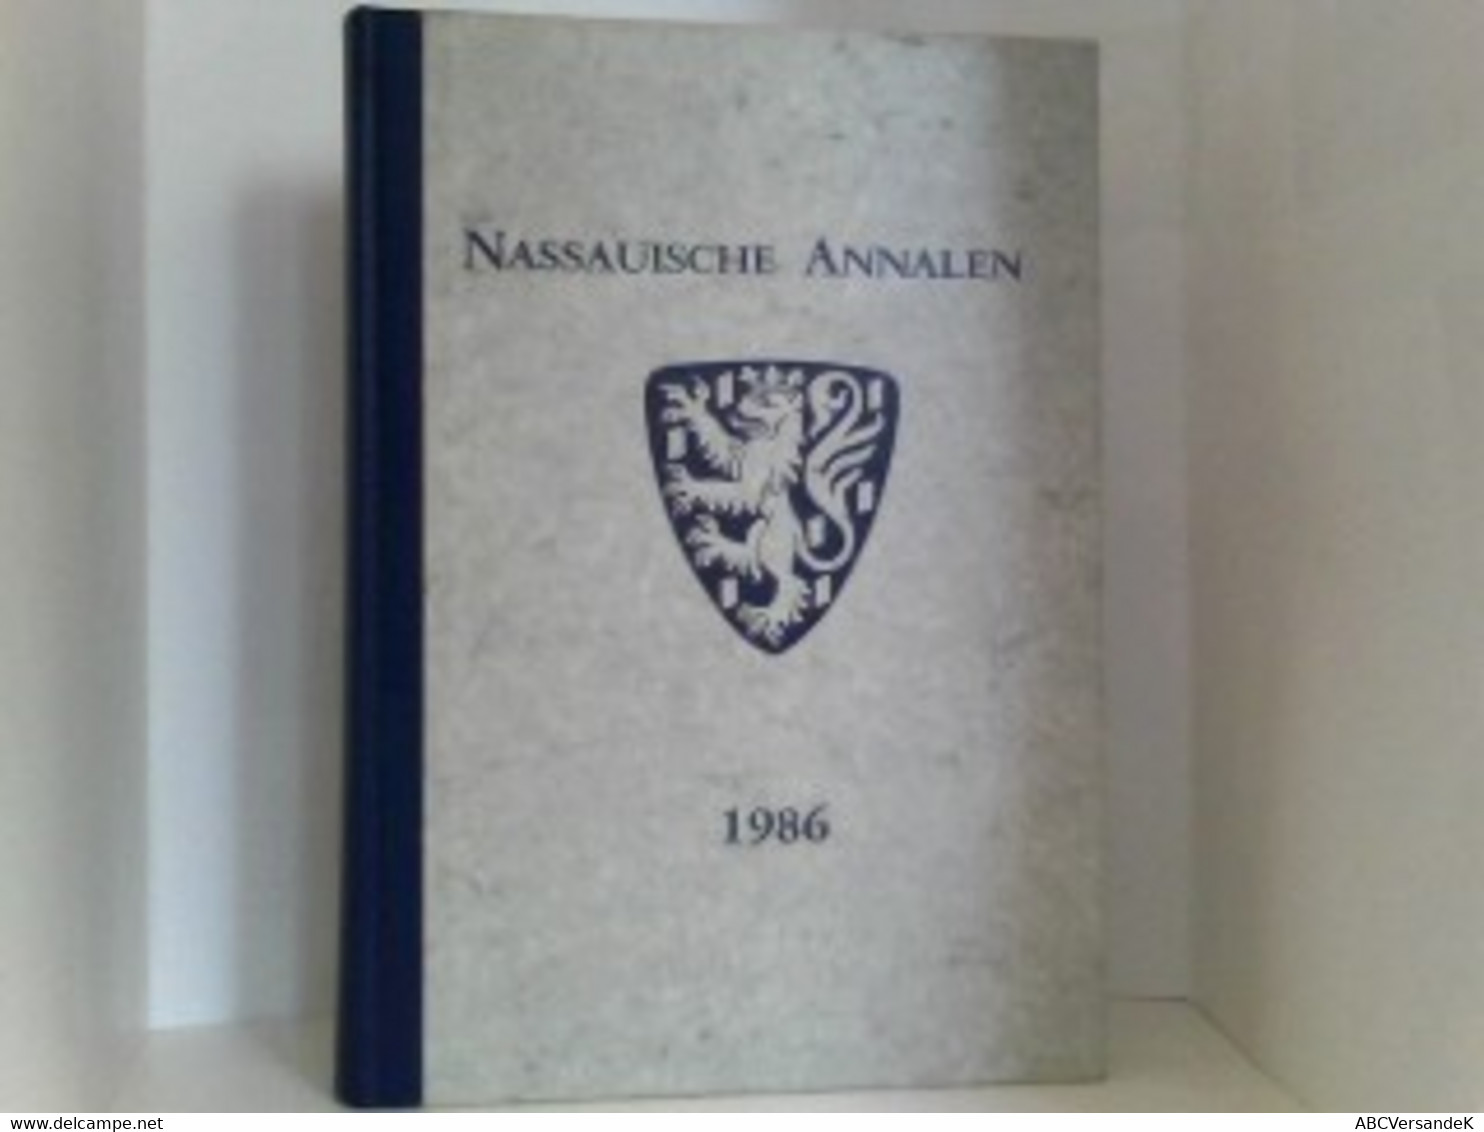 Nassauische Annalen 1986 - Hesse